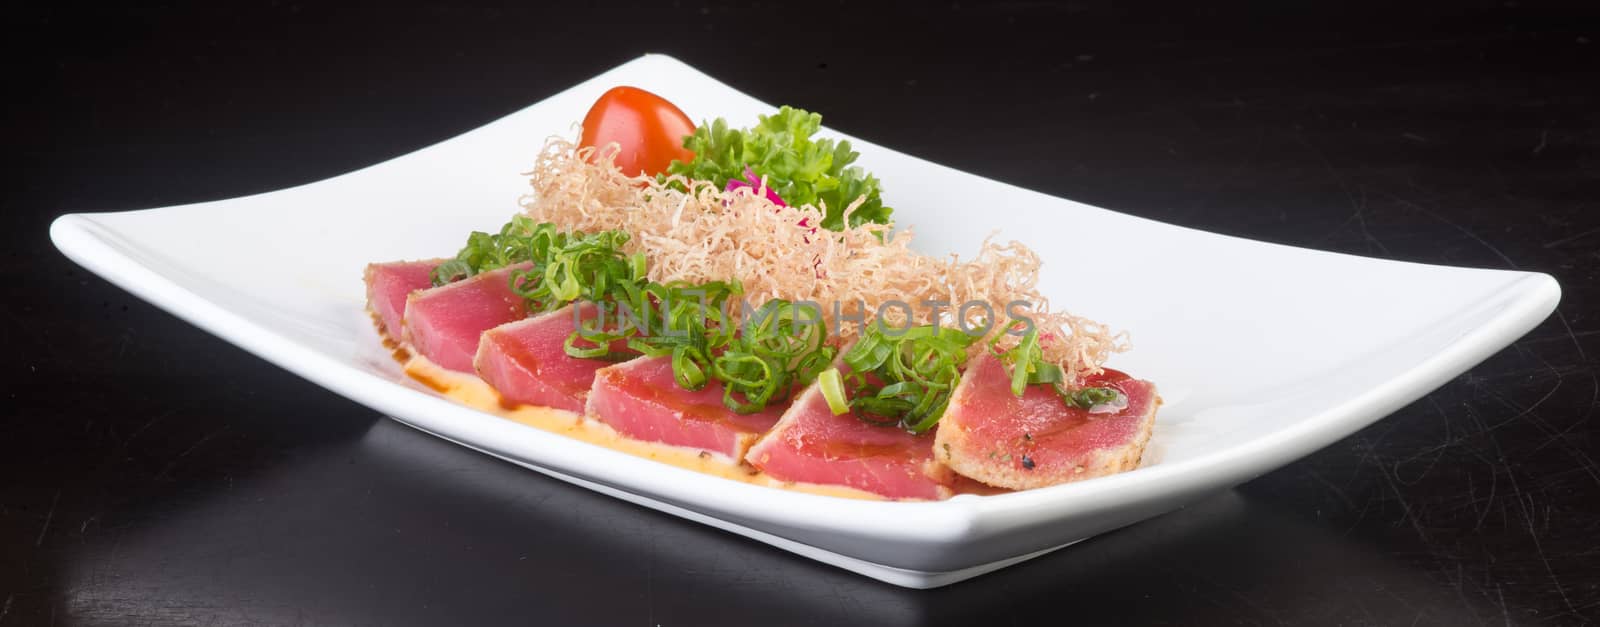 japanese cuisine. sashimi on background